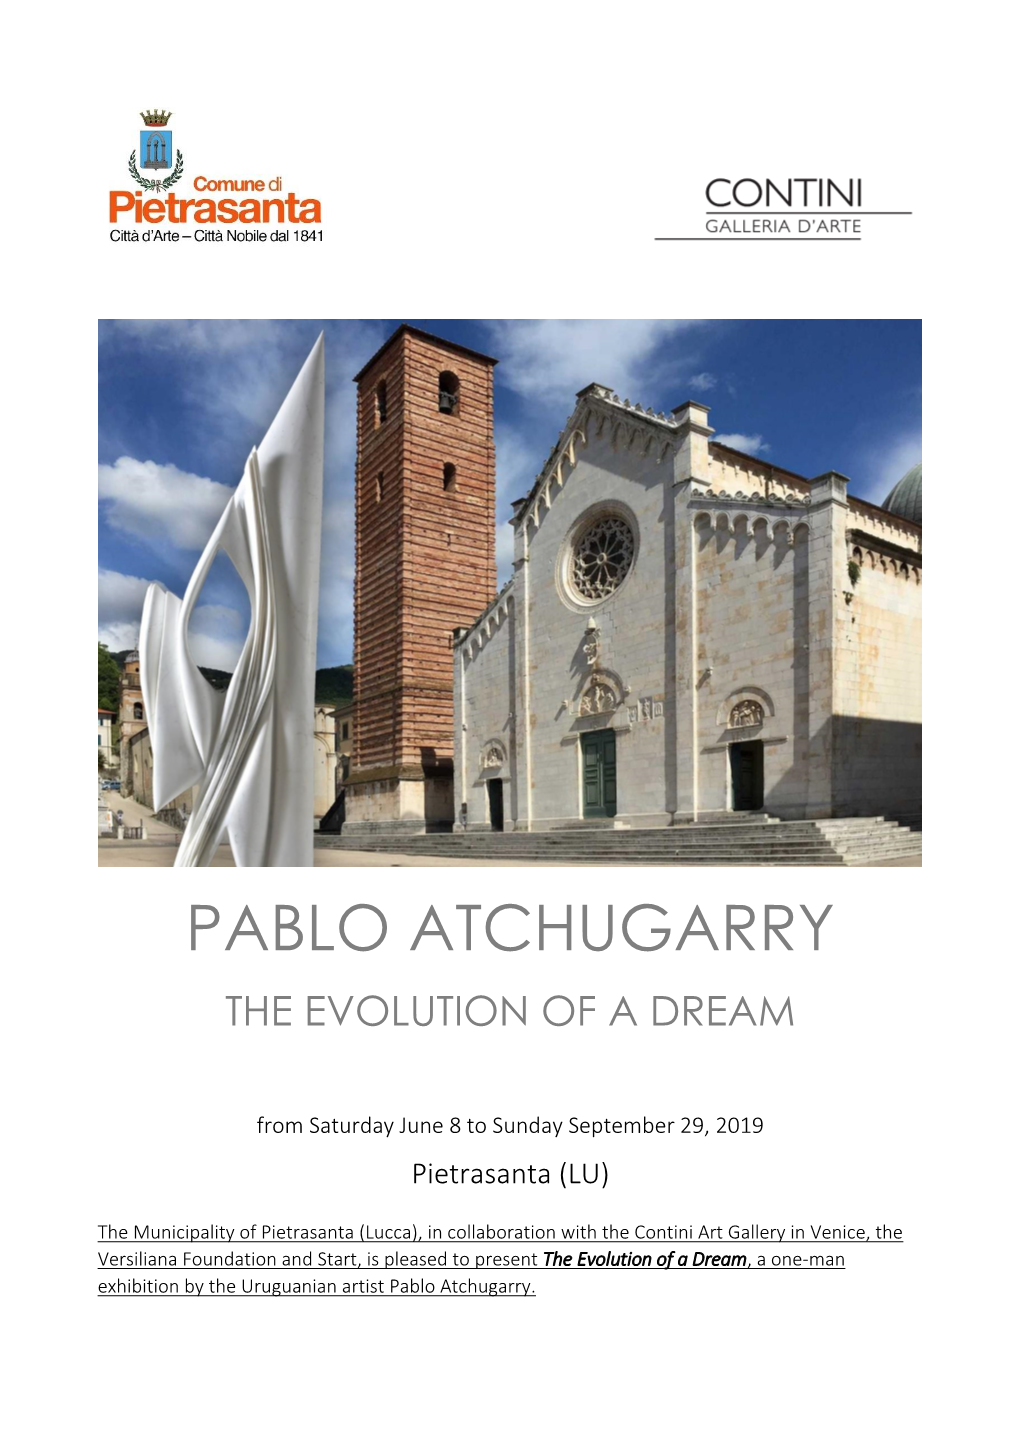 Pablo Atchugarry the Evolution of a Dream